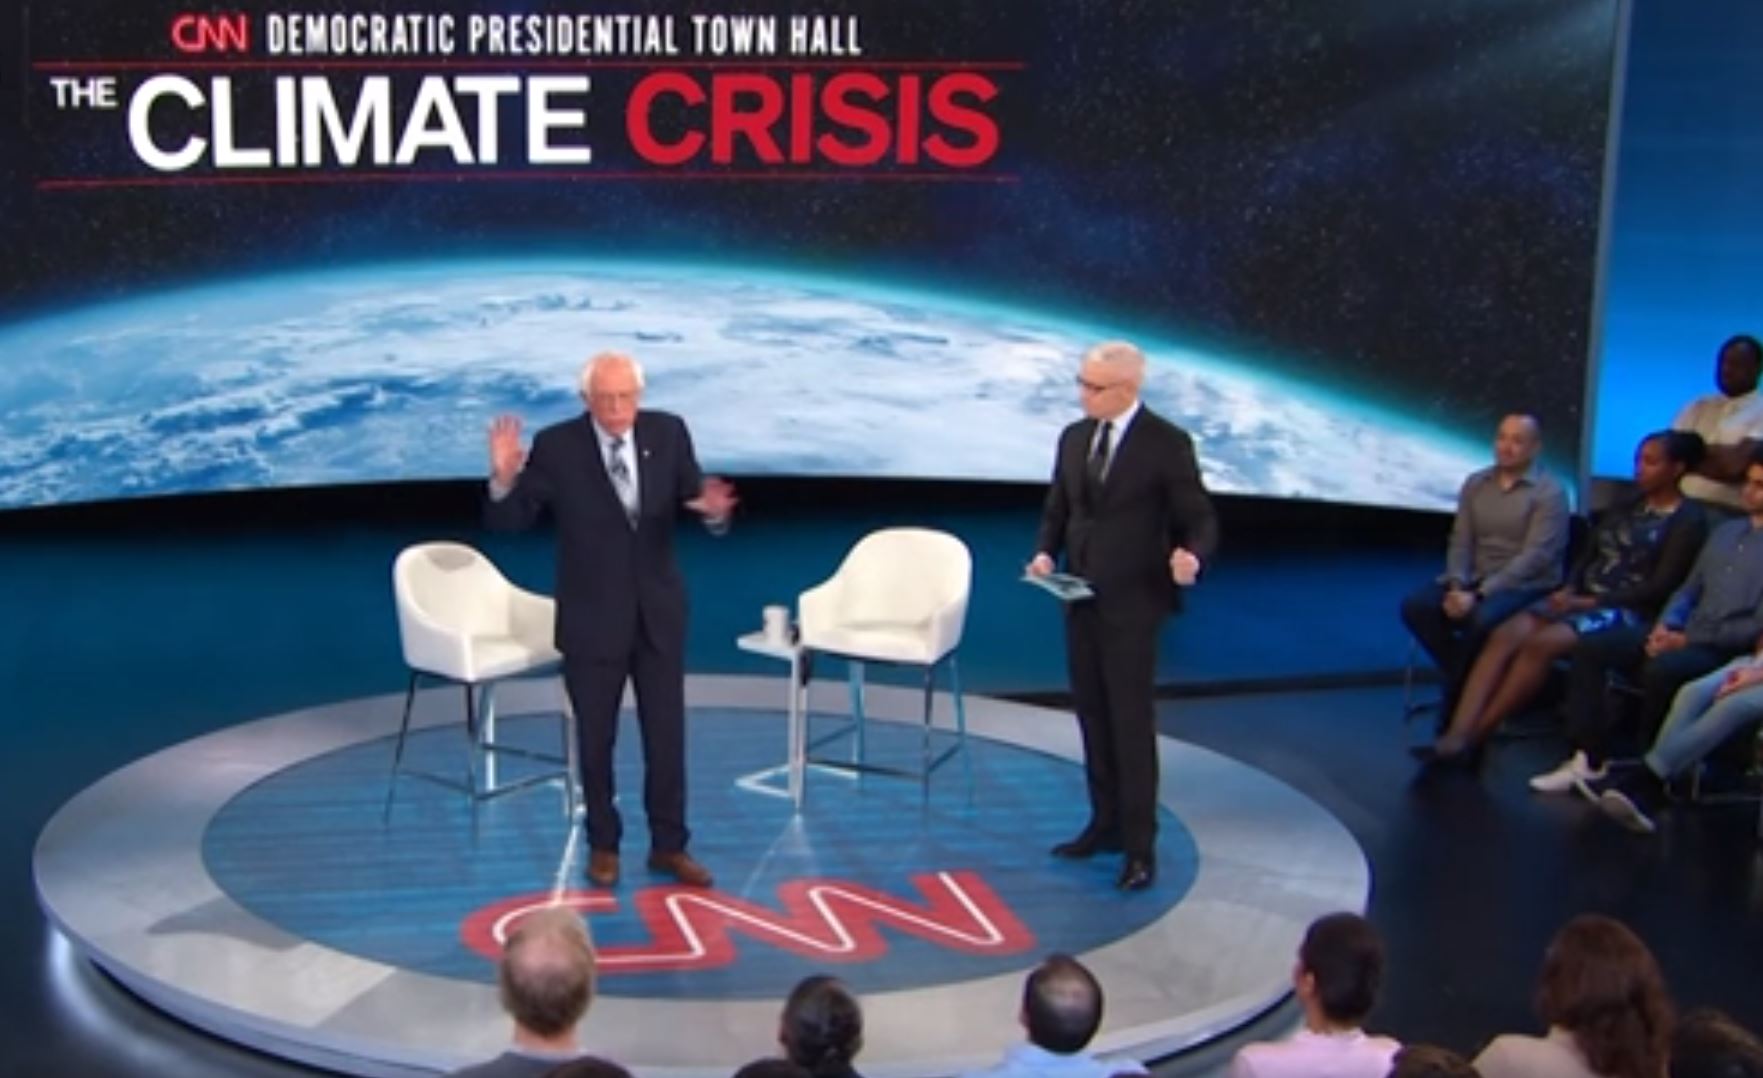 CNN's climate circus